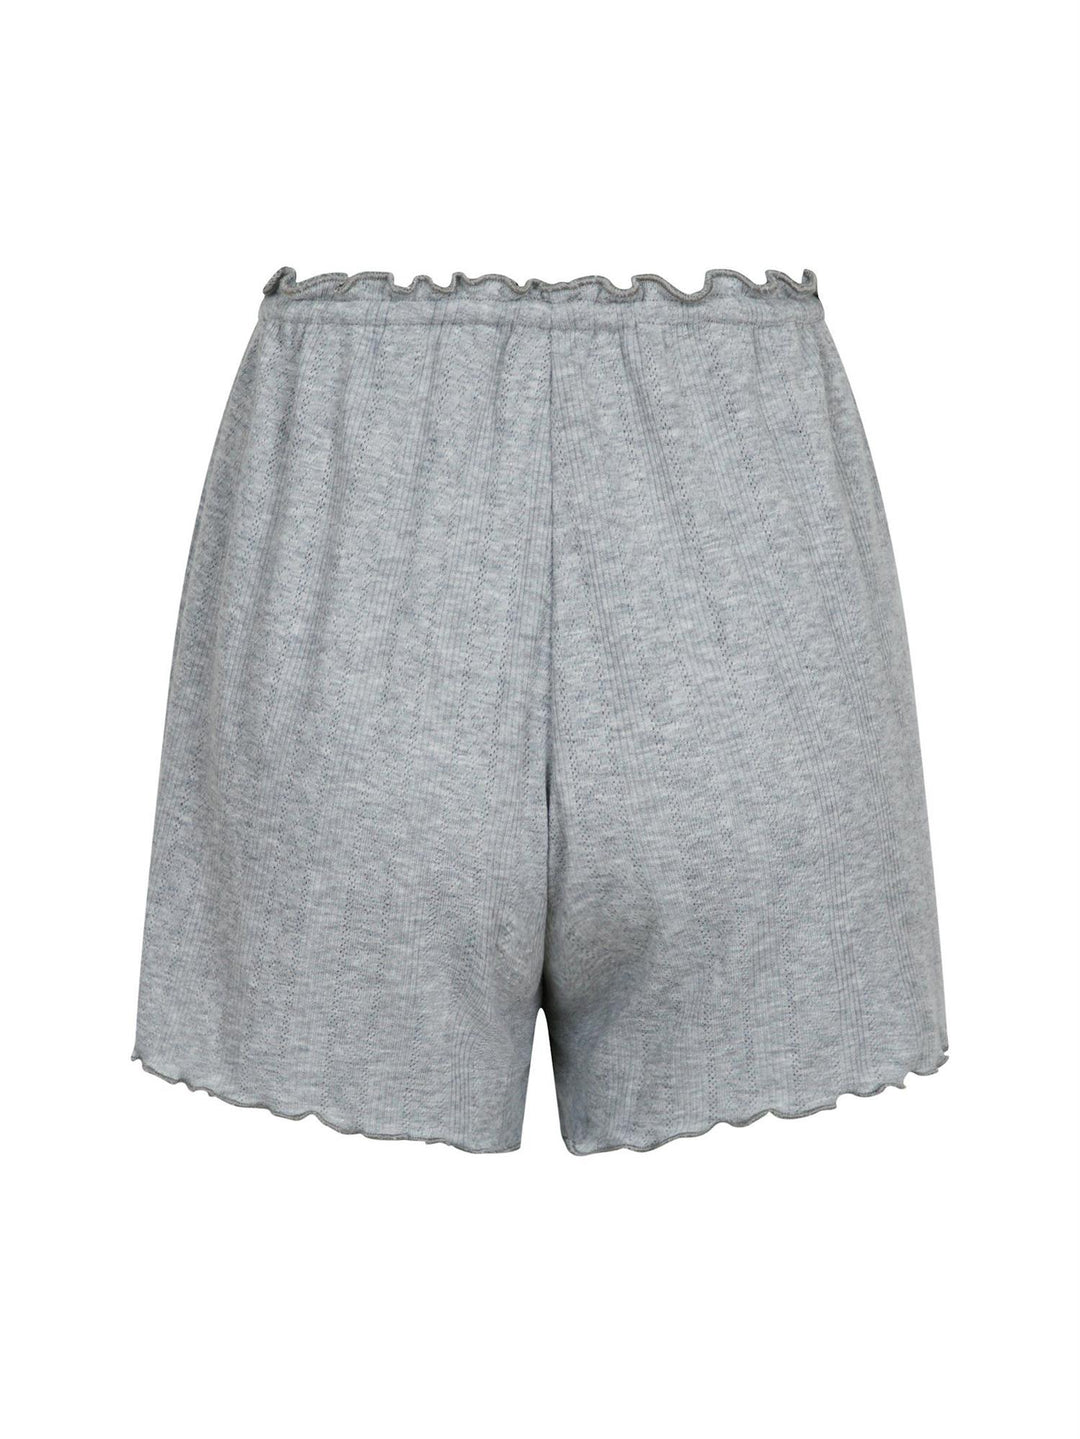 Merritt Pointelle Shorts  Light Grey